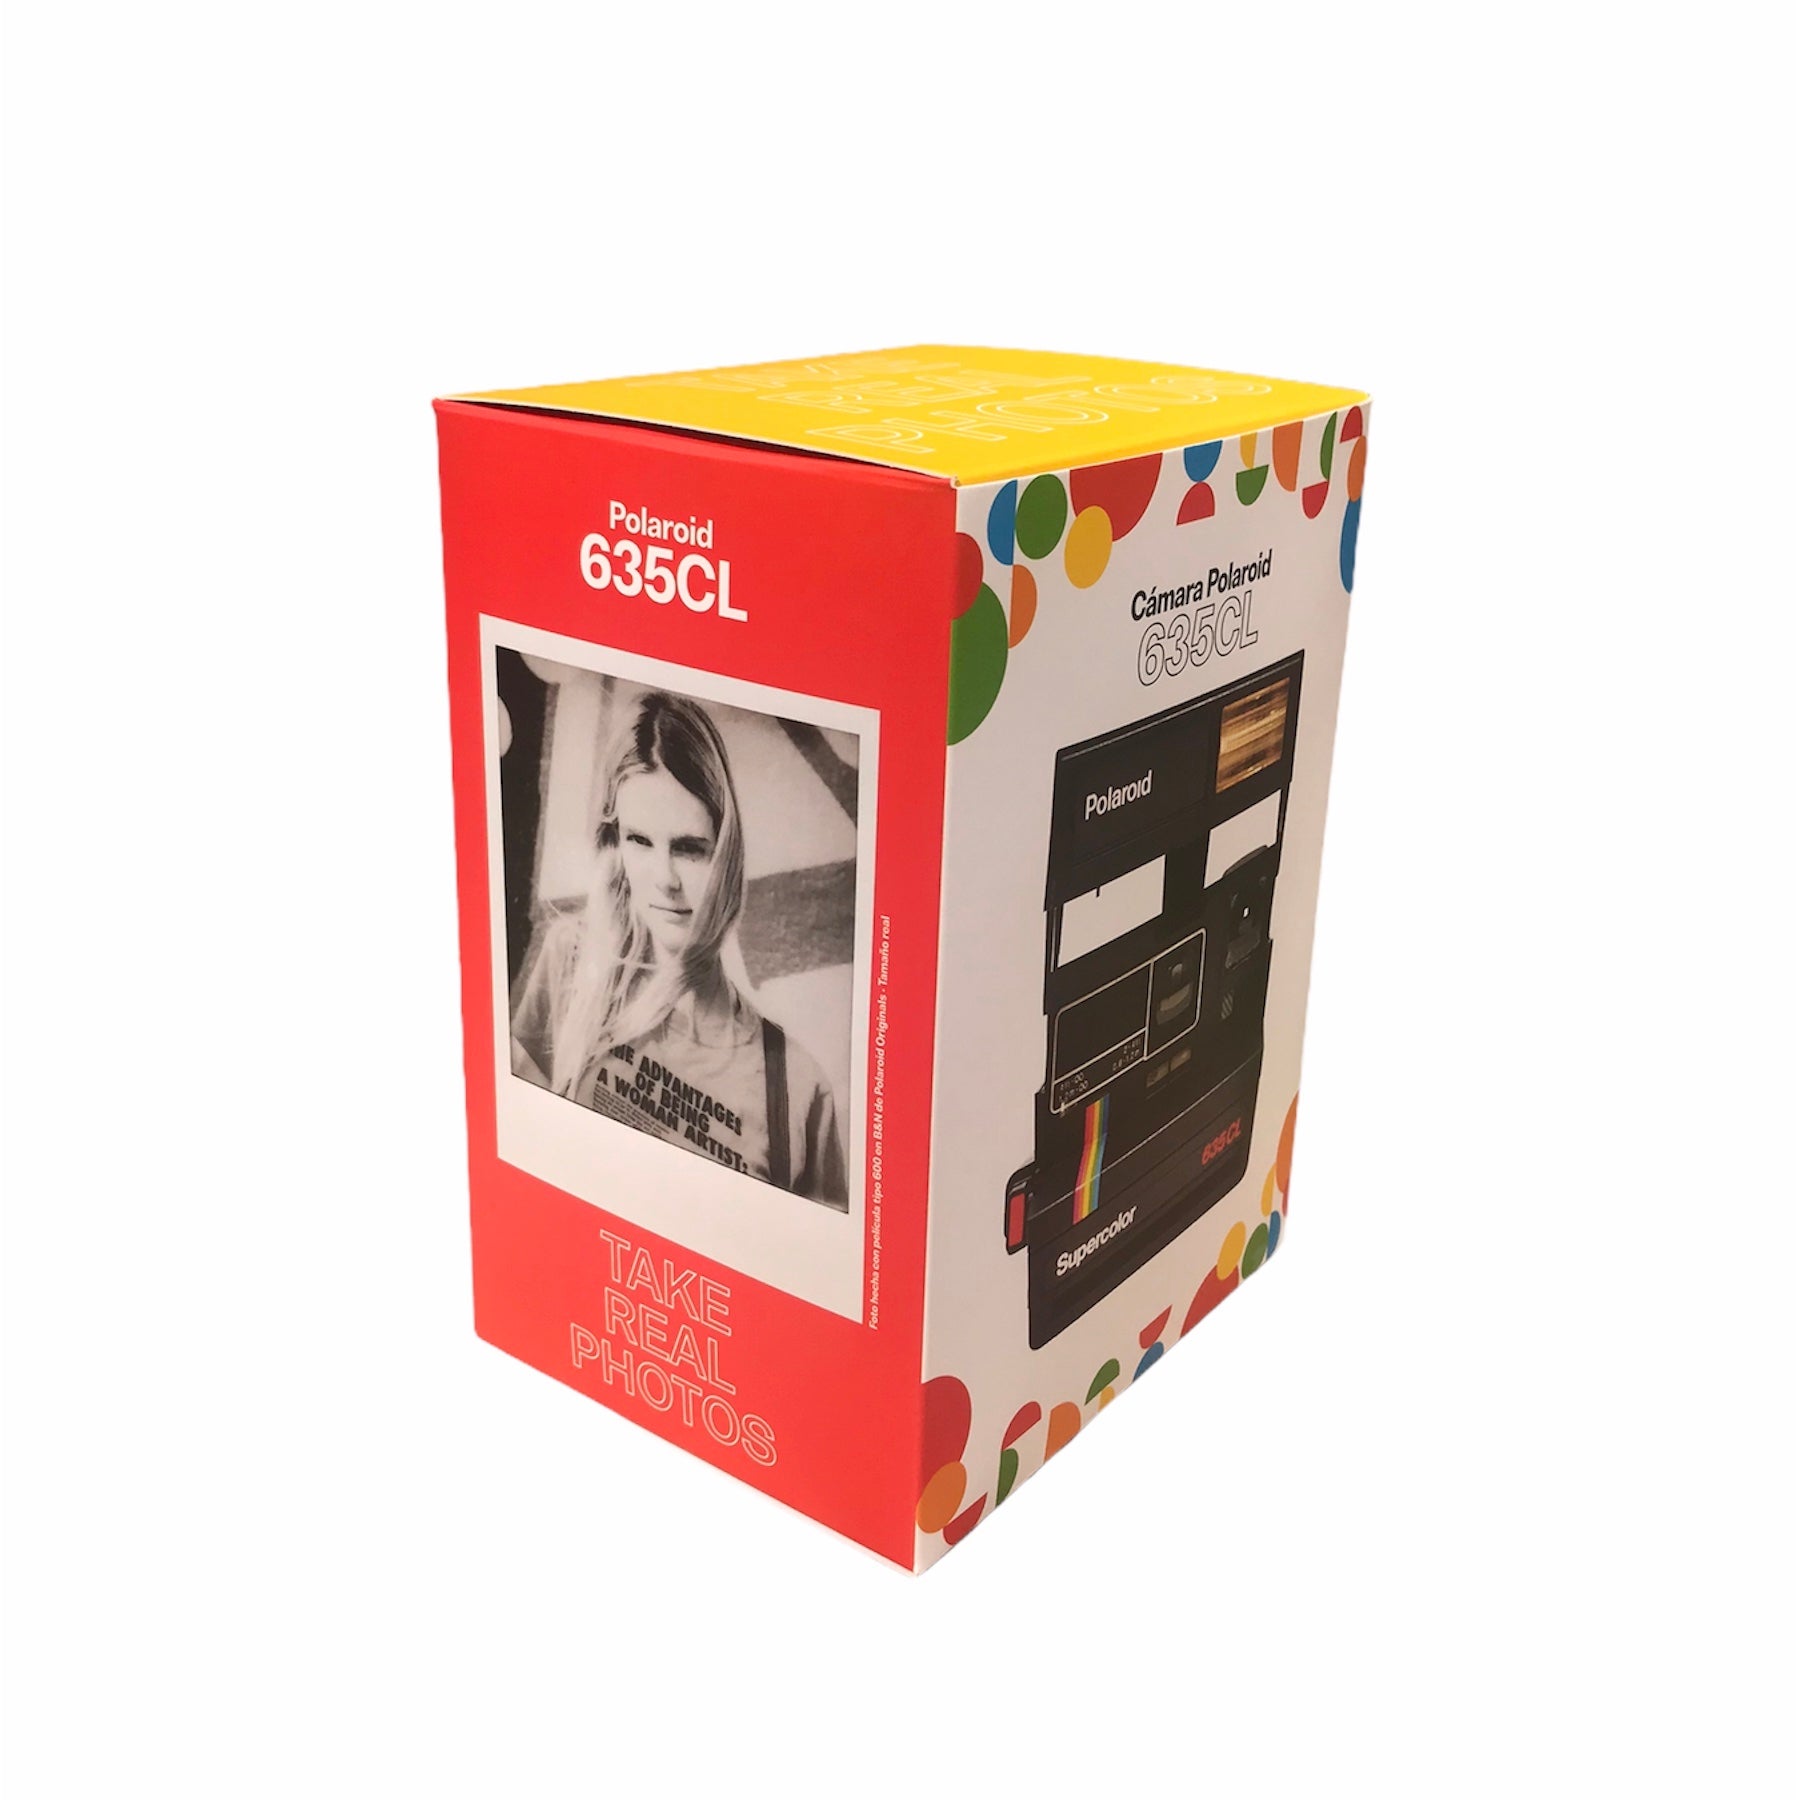 Polaroid Supercolor 635 CL remis à neuf